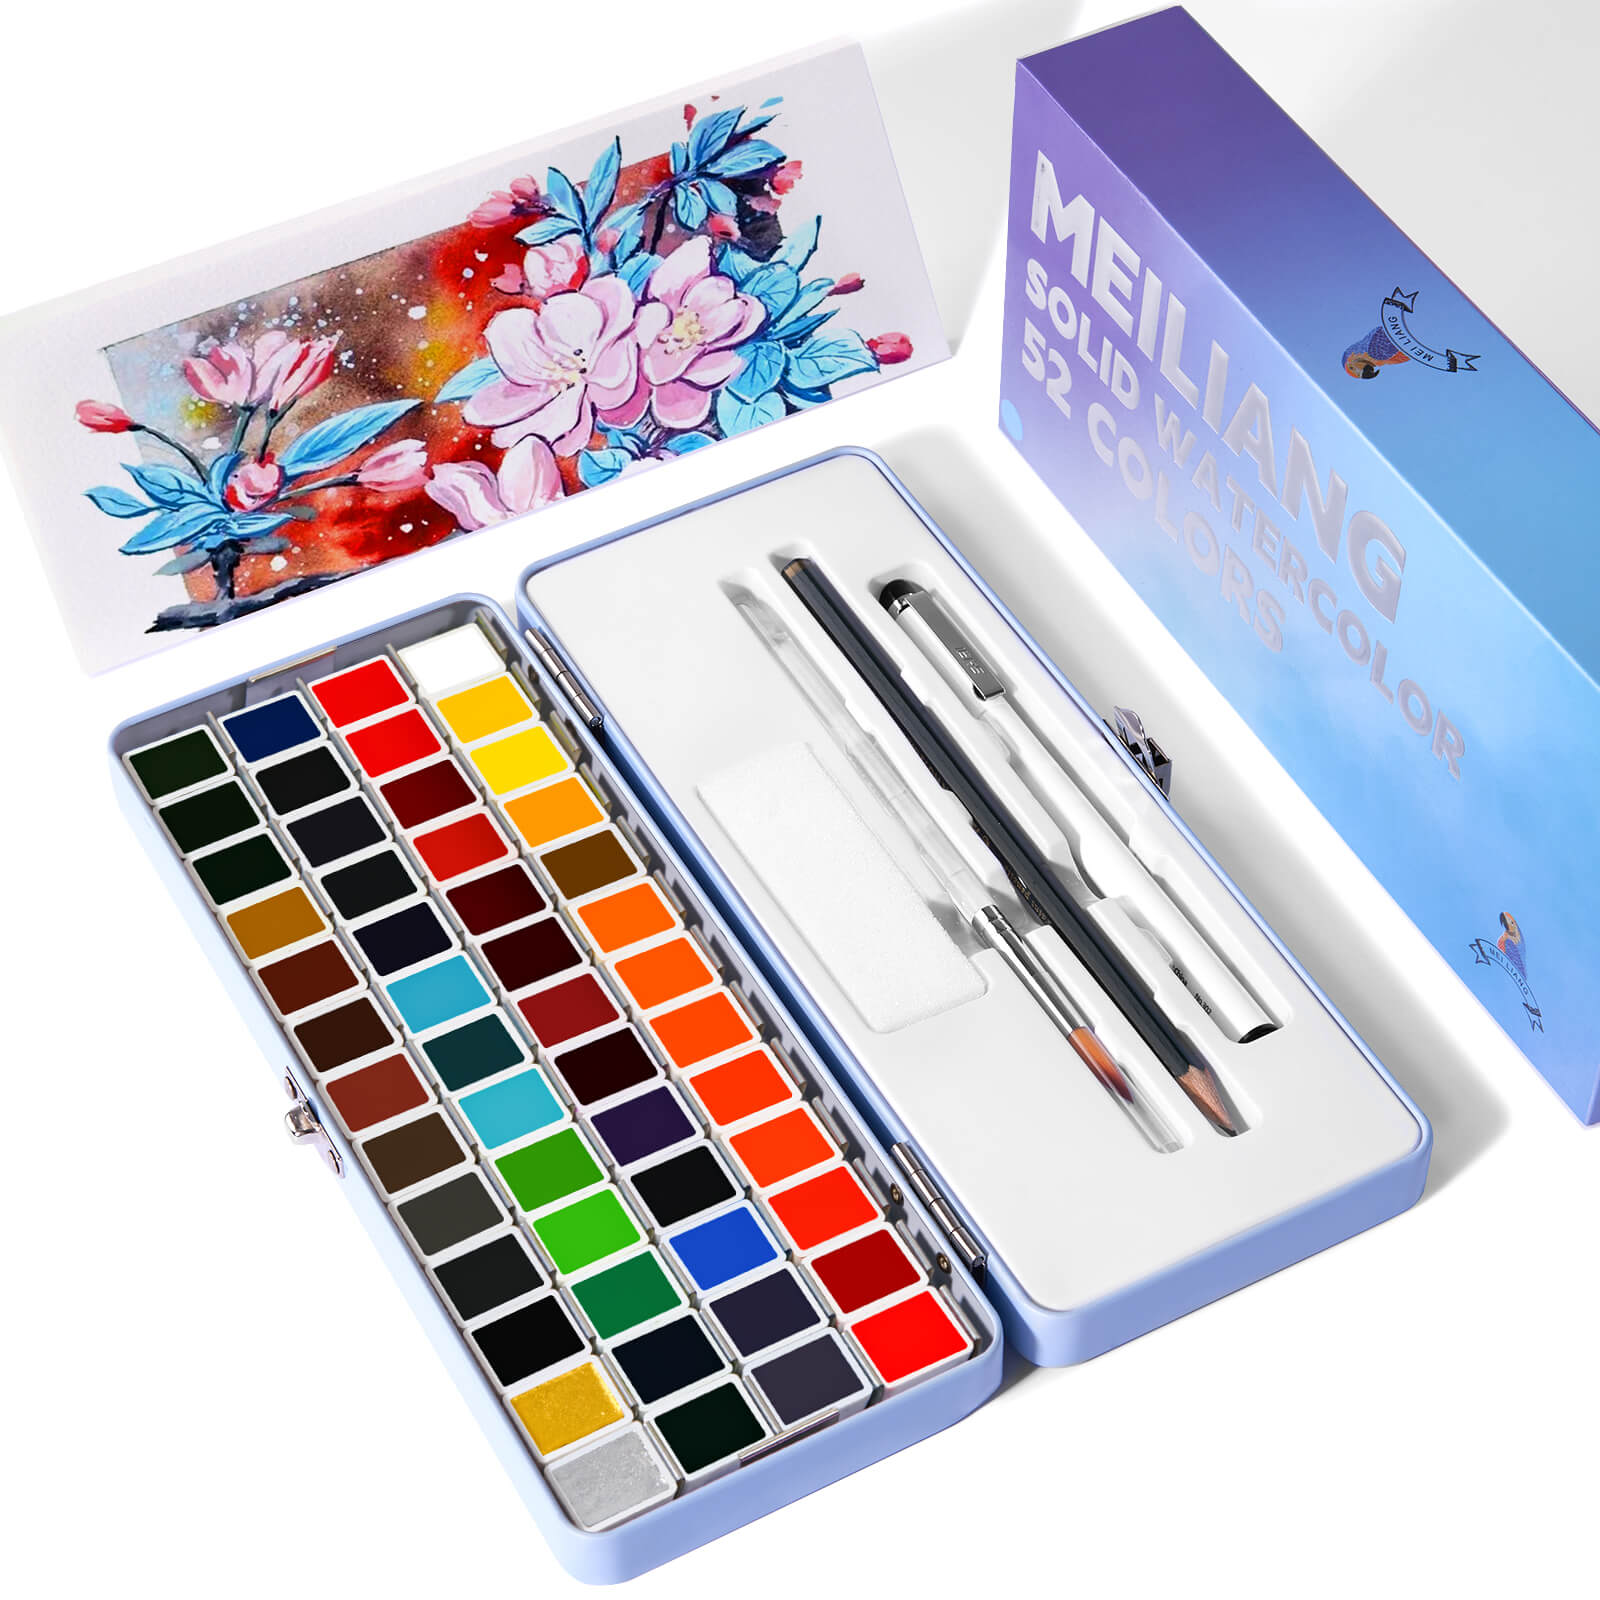 MeiLiang – ensemble de peinture aquarelle solide, 52 couleurs Standard (boîte bleue)